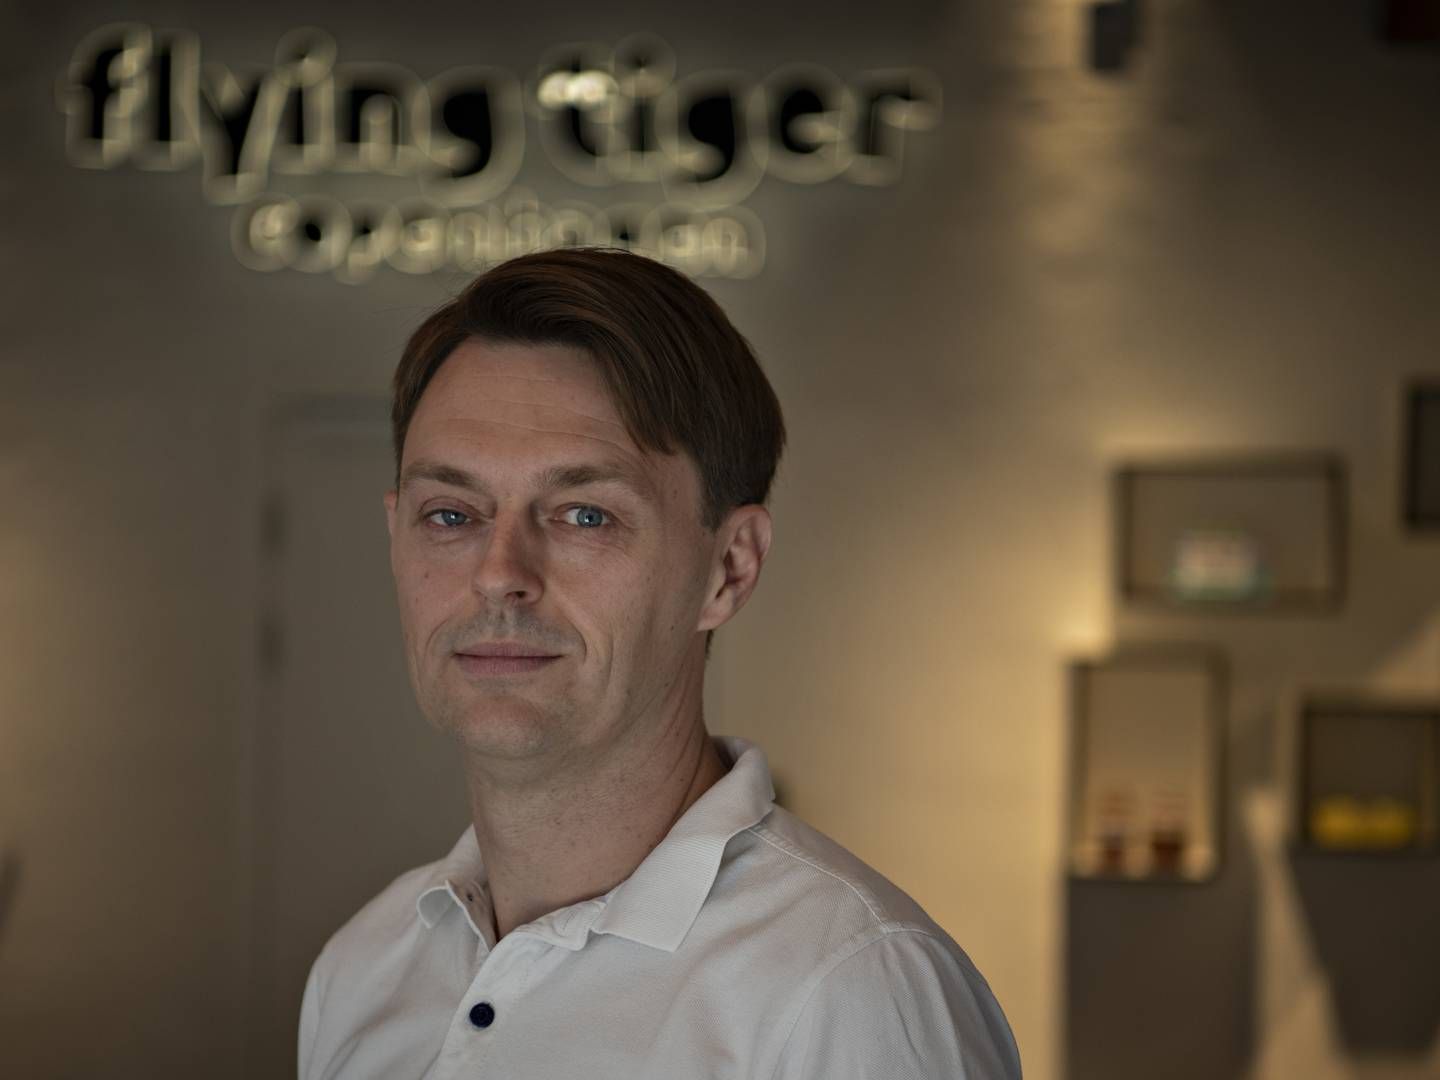 Detailkæden Flying Tiger Copenhagen vil i løbet af fire-frem år udvide med 500 franchise-butikker uden for Europa. Det fortæller selskabets topchef Martin Jermiin. | Foto: Brian Karmark/ERH